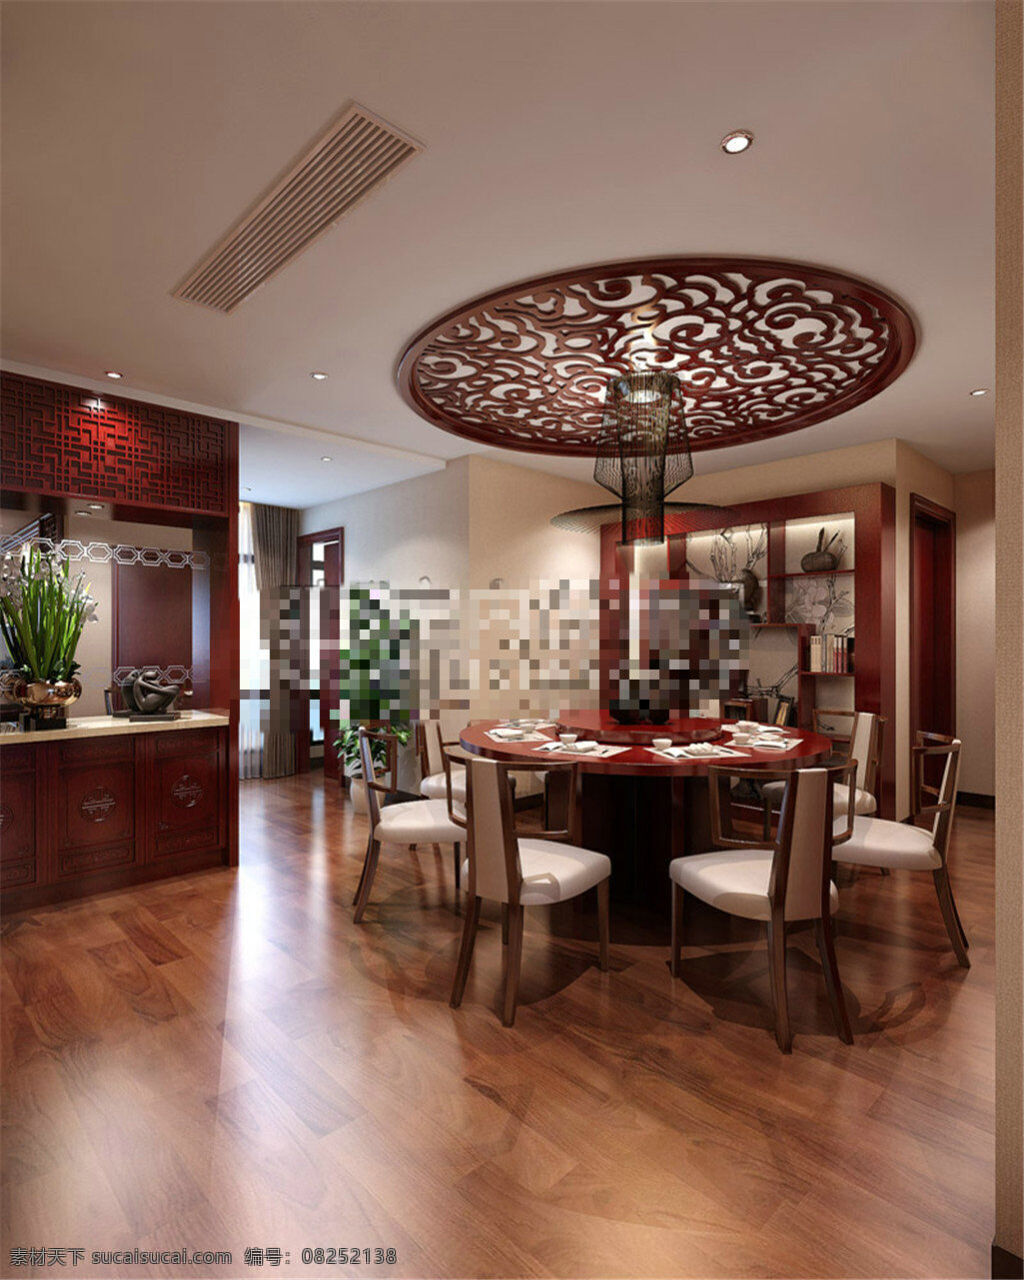 中式 餐厅 模型 室内设计 室内模型 室内设计模型 装修模型 室内 场景 3d模型素材 室内装饰 3d室内模型 max 黑色